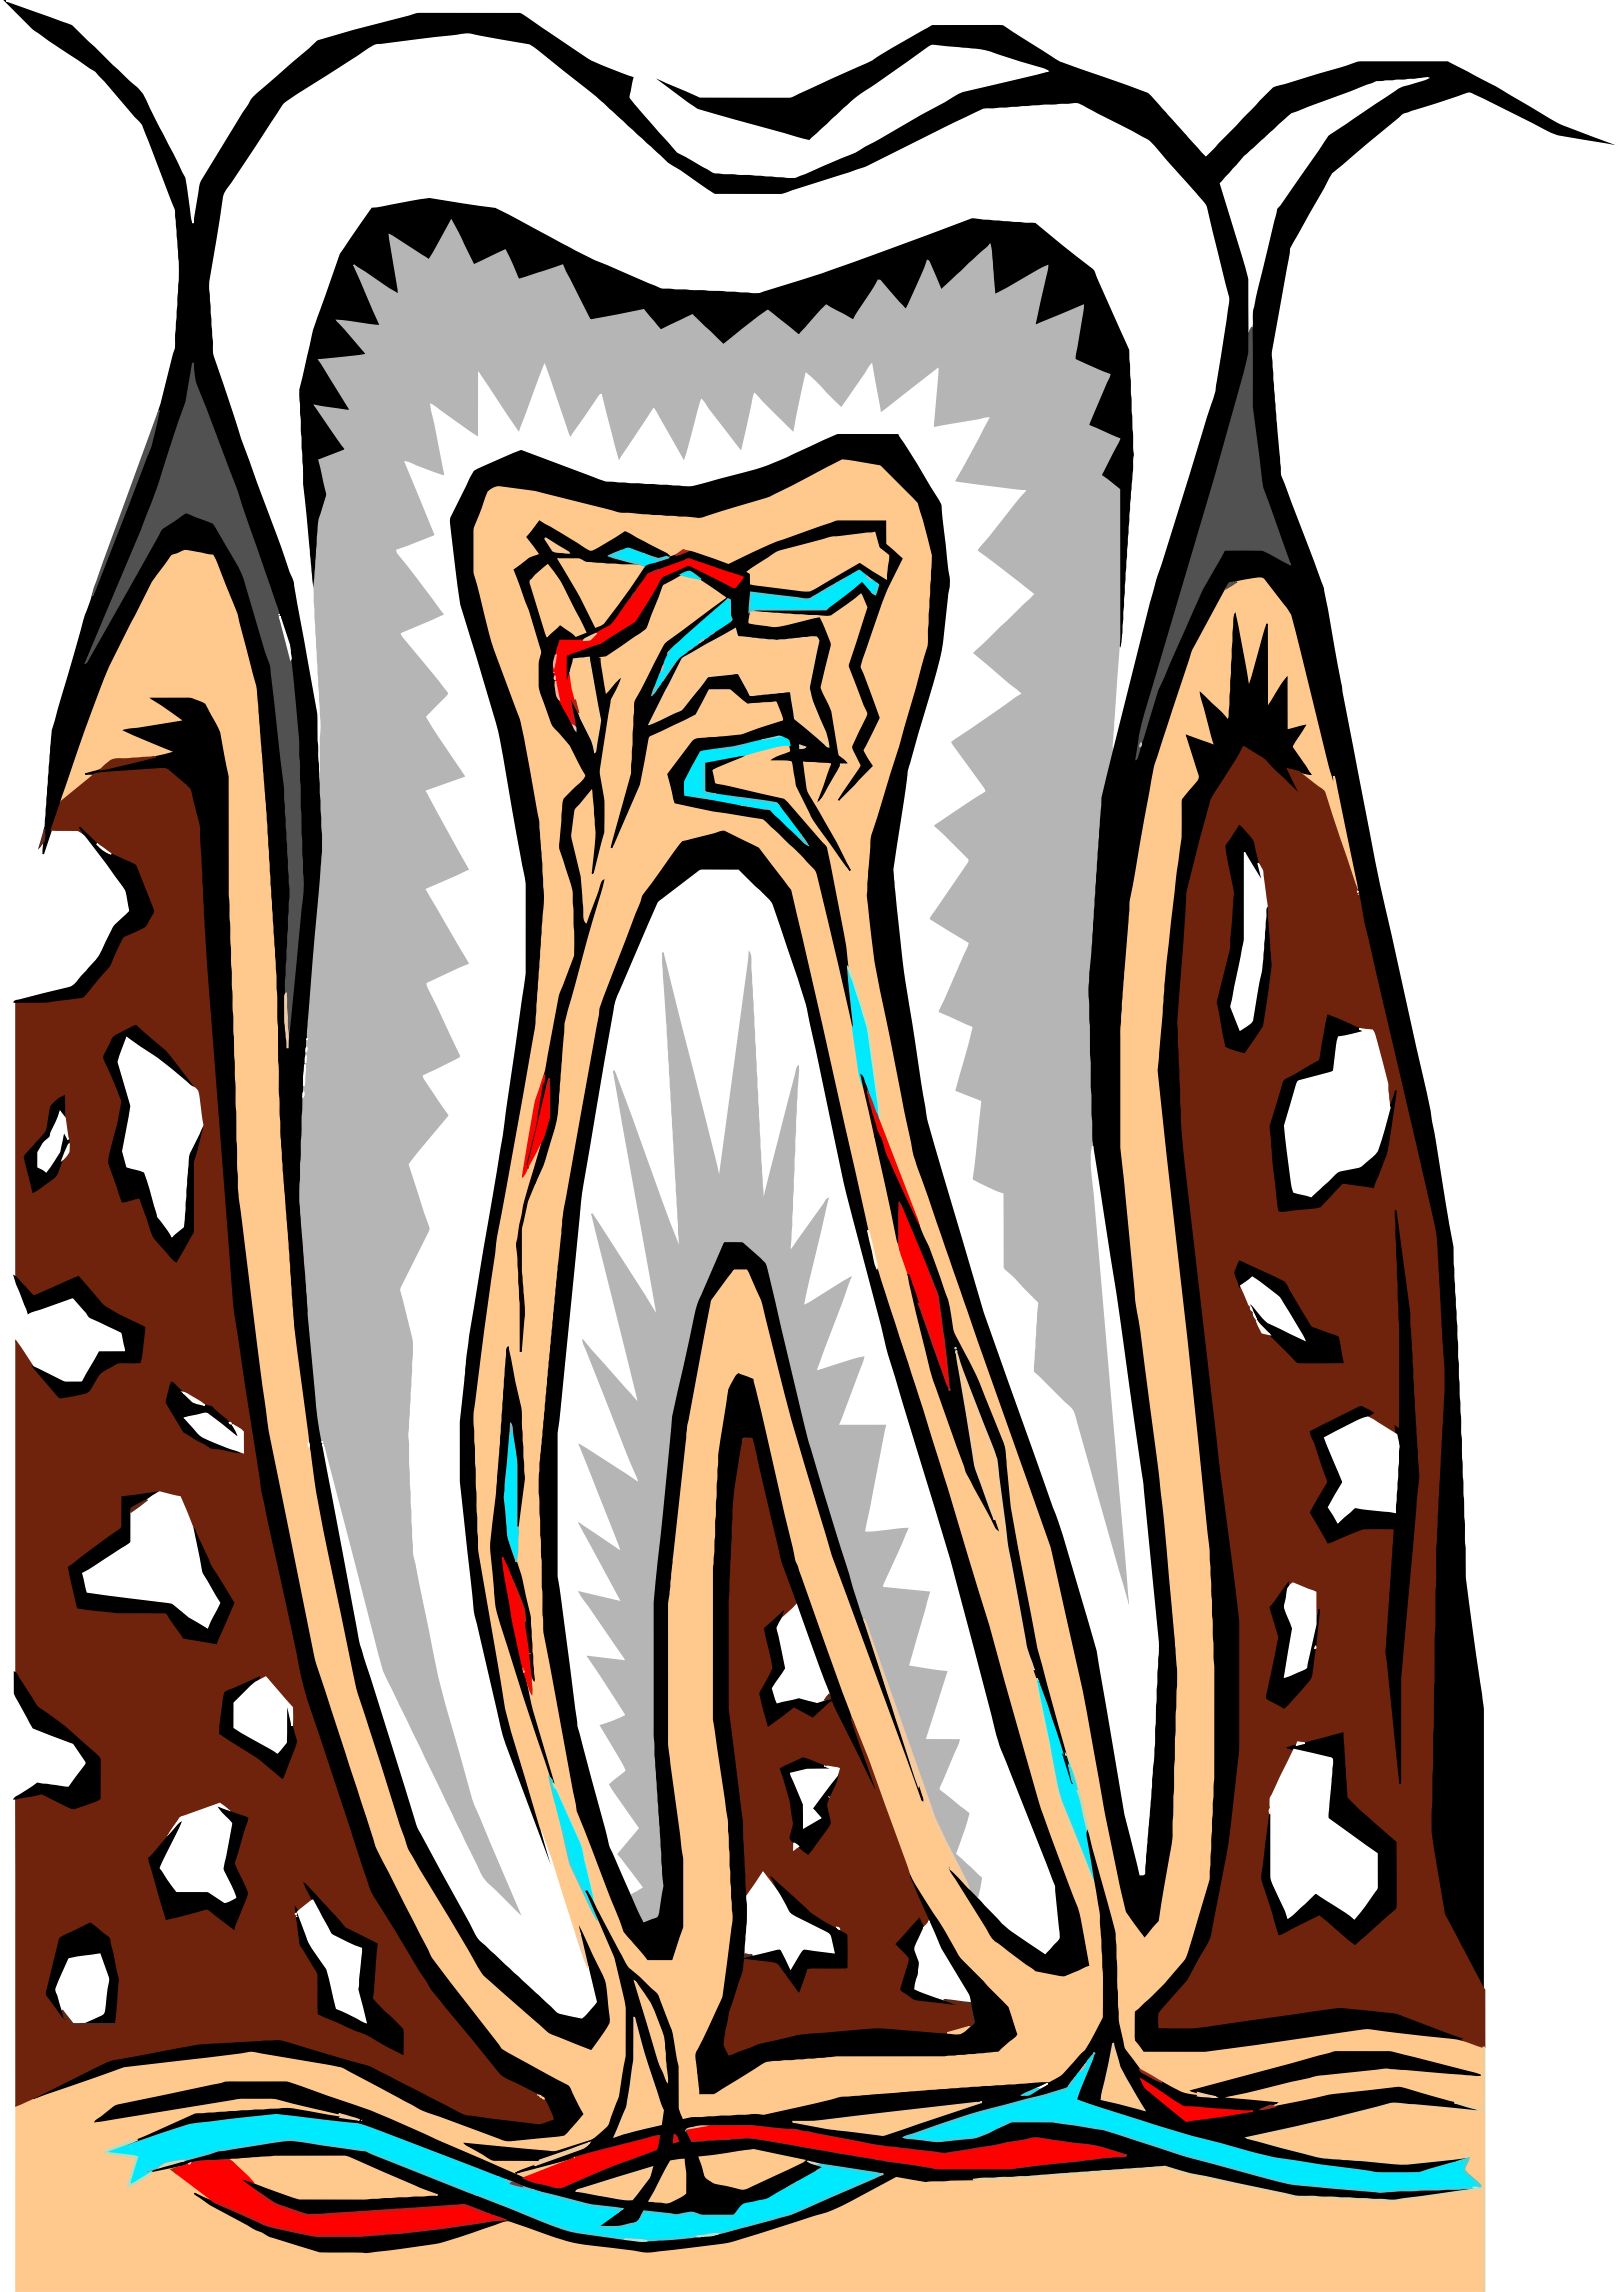 Картинка зубы человека